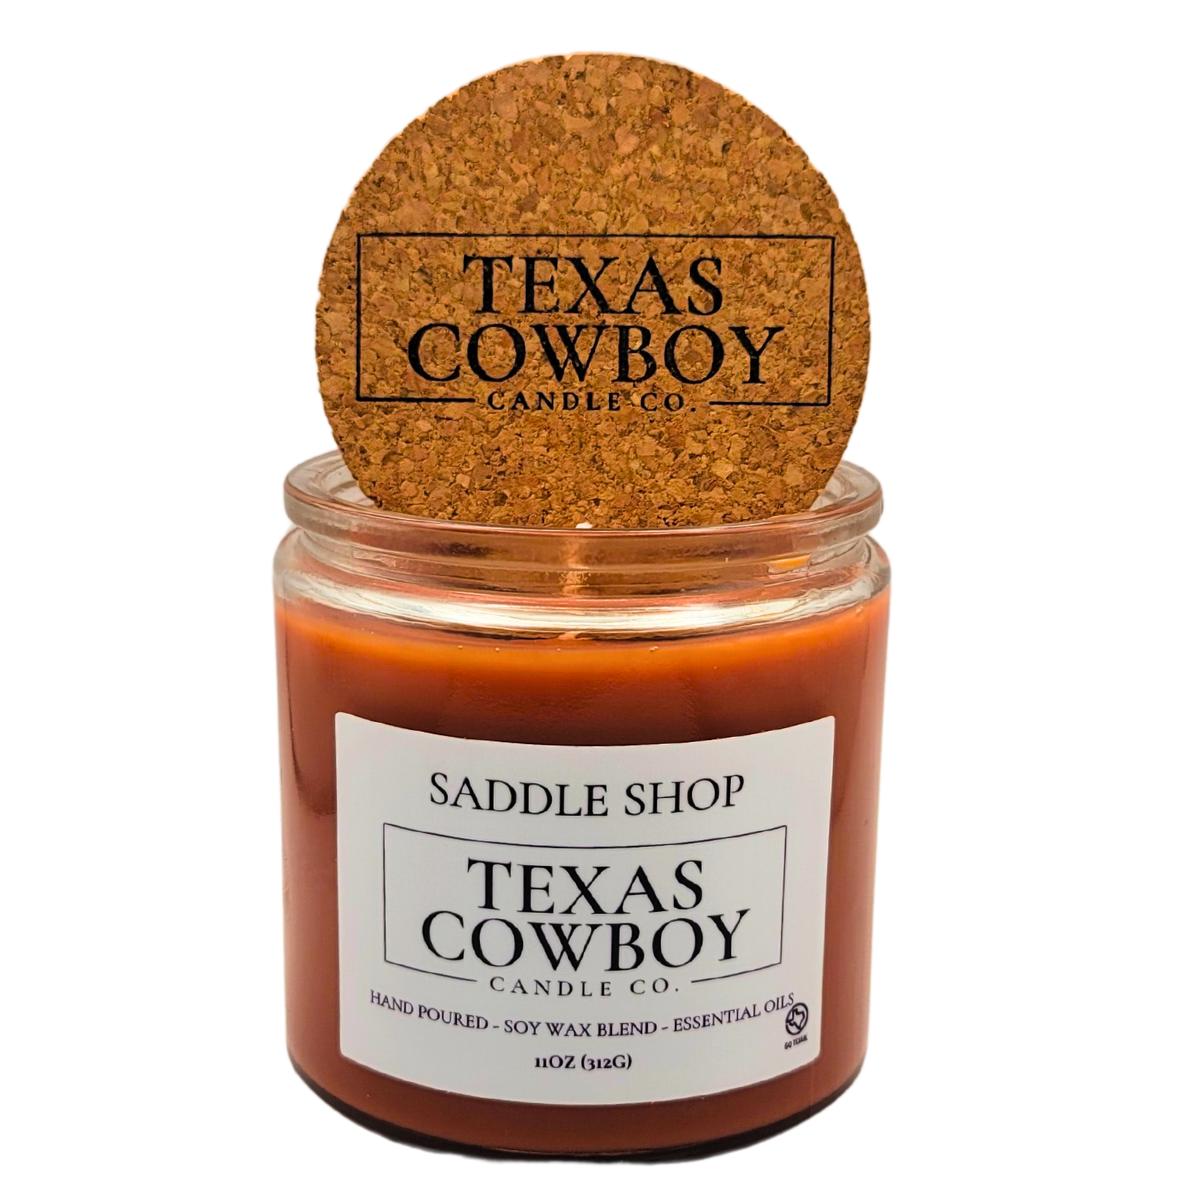 Saddle Shop Candle